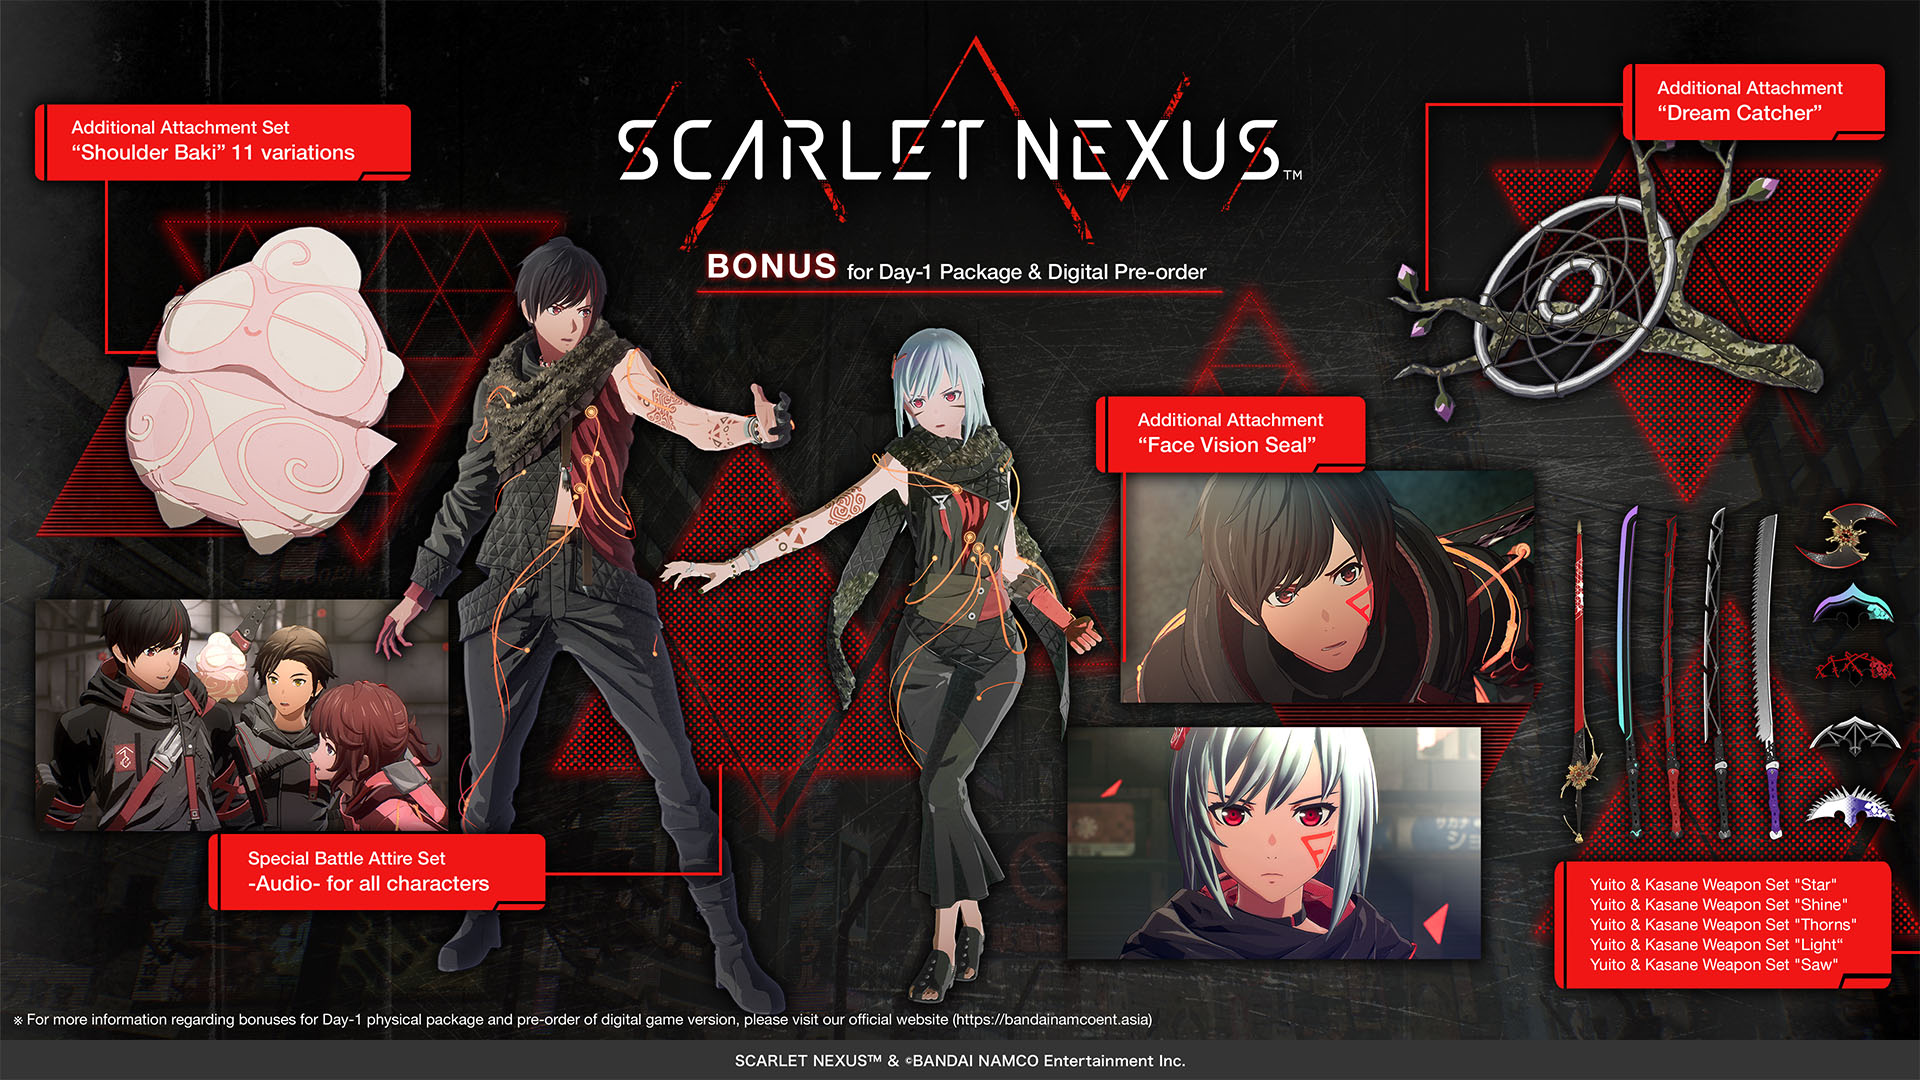 Scarlet Nexus gameplay – Special Battle Attire Set “Audio,” New